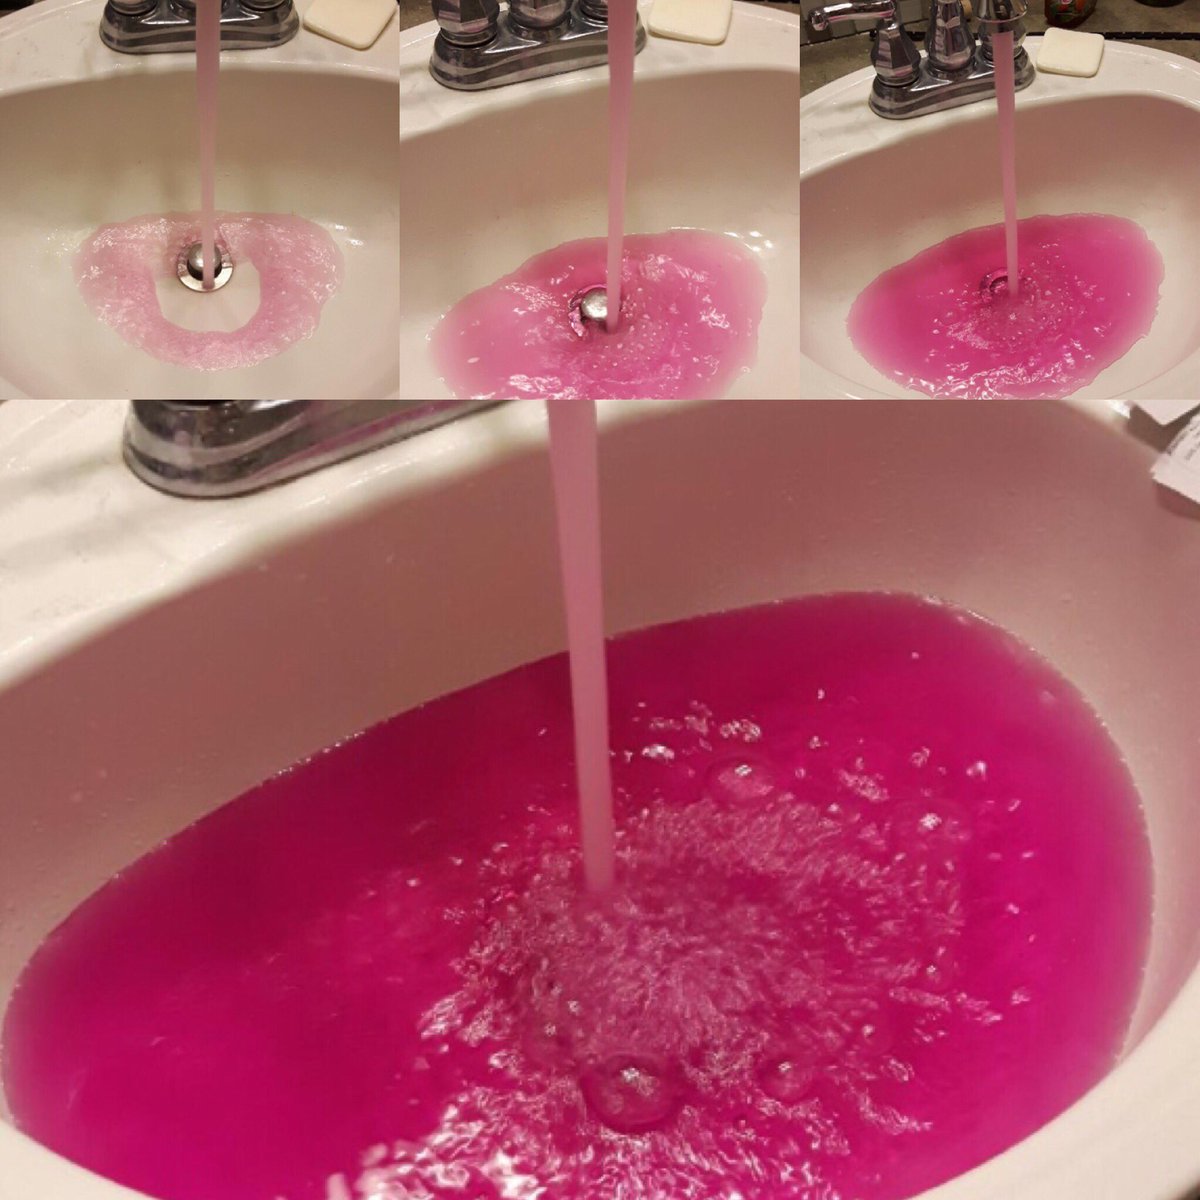  Canada: Nước máy chảy ra có màu hồng, xác định nguyên nhân